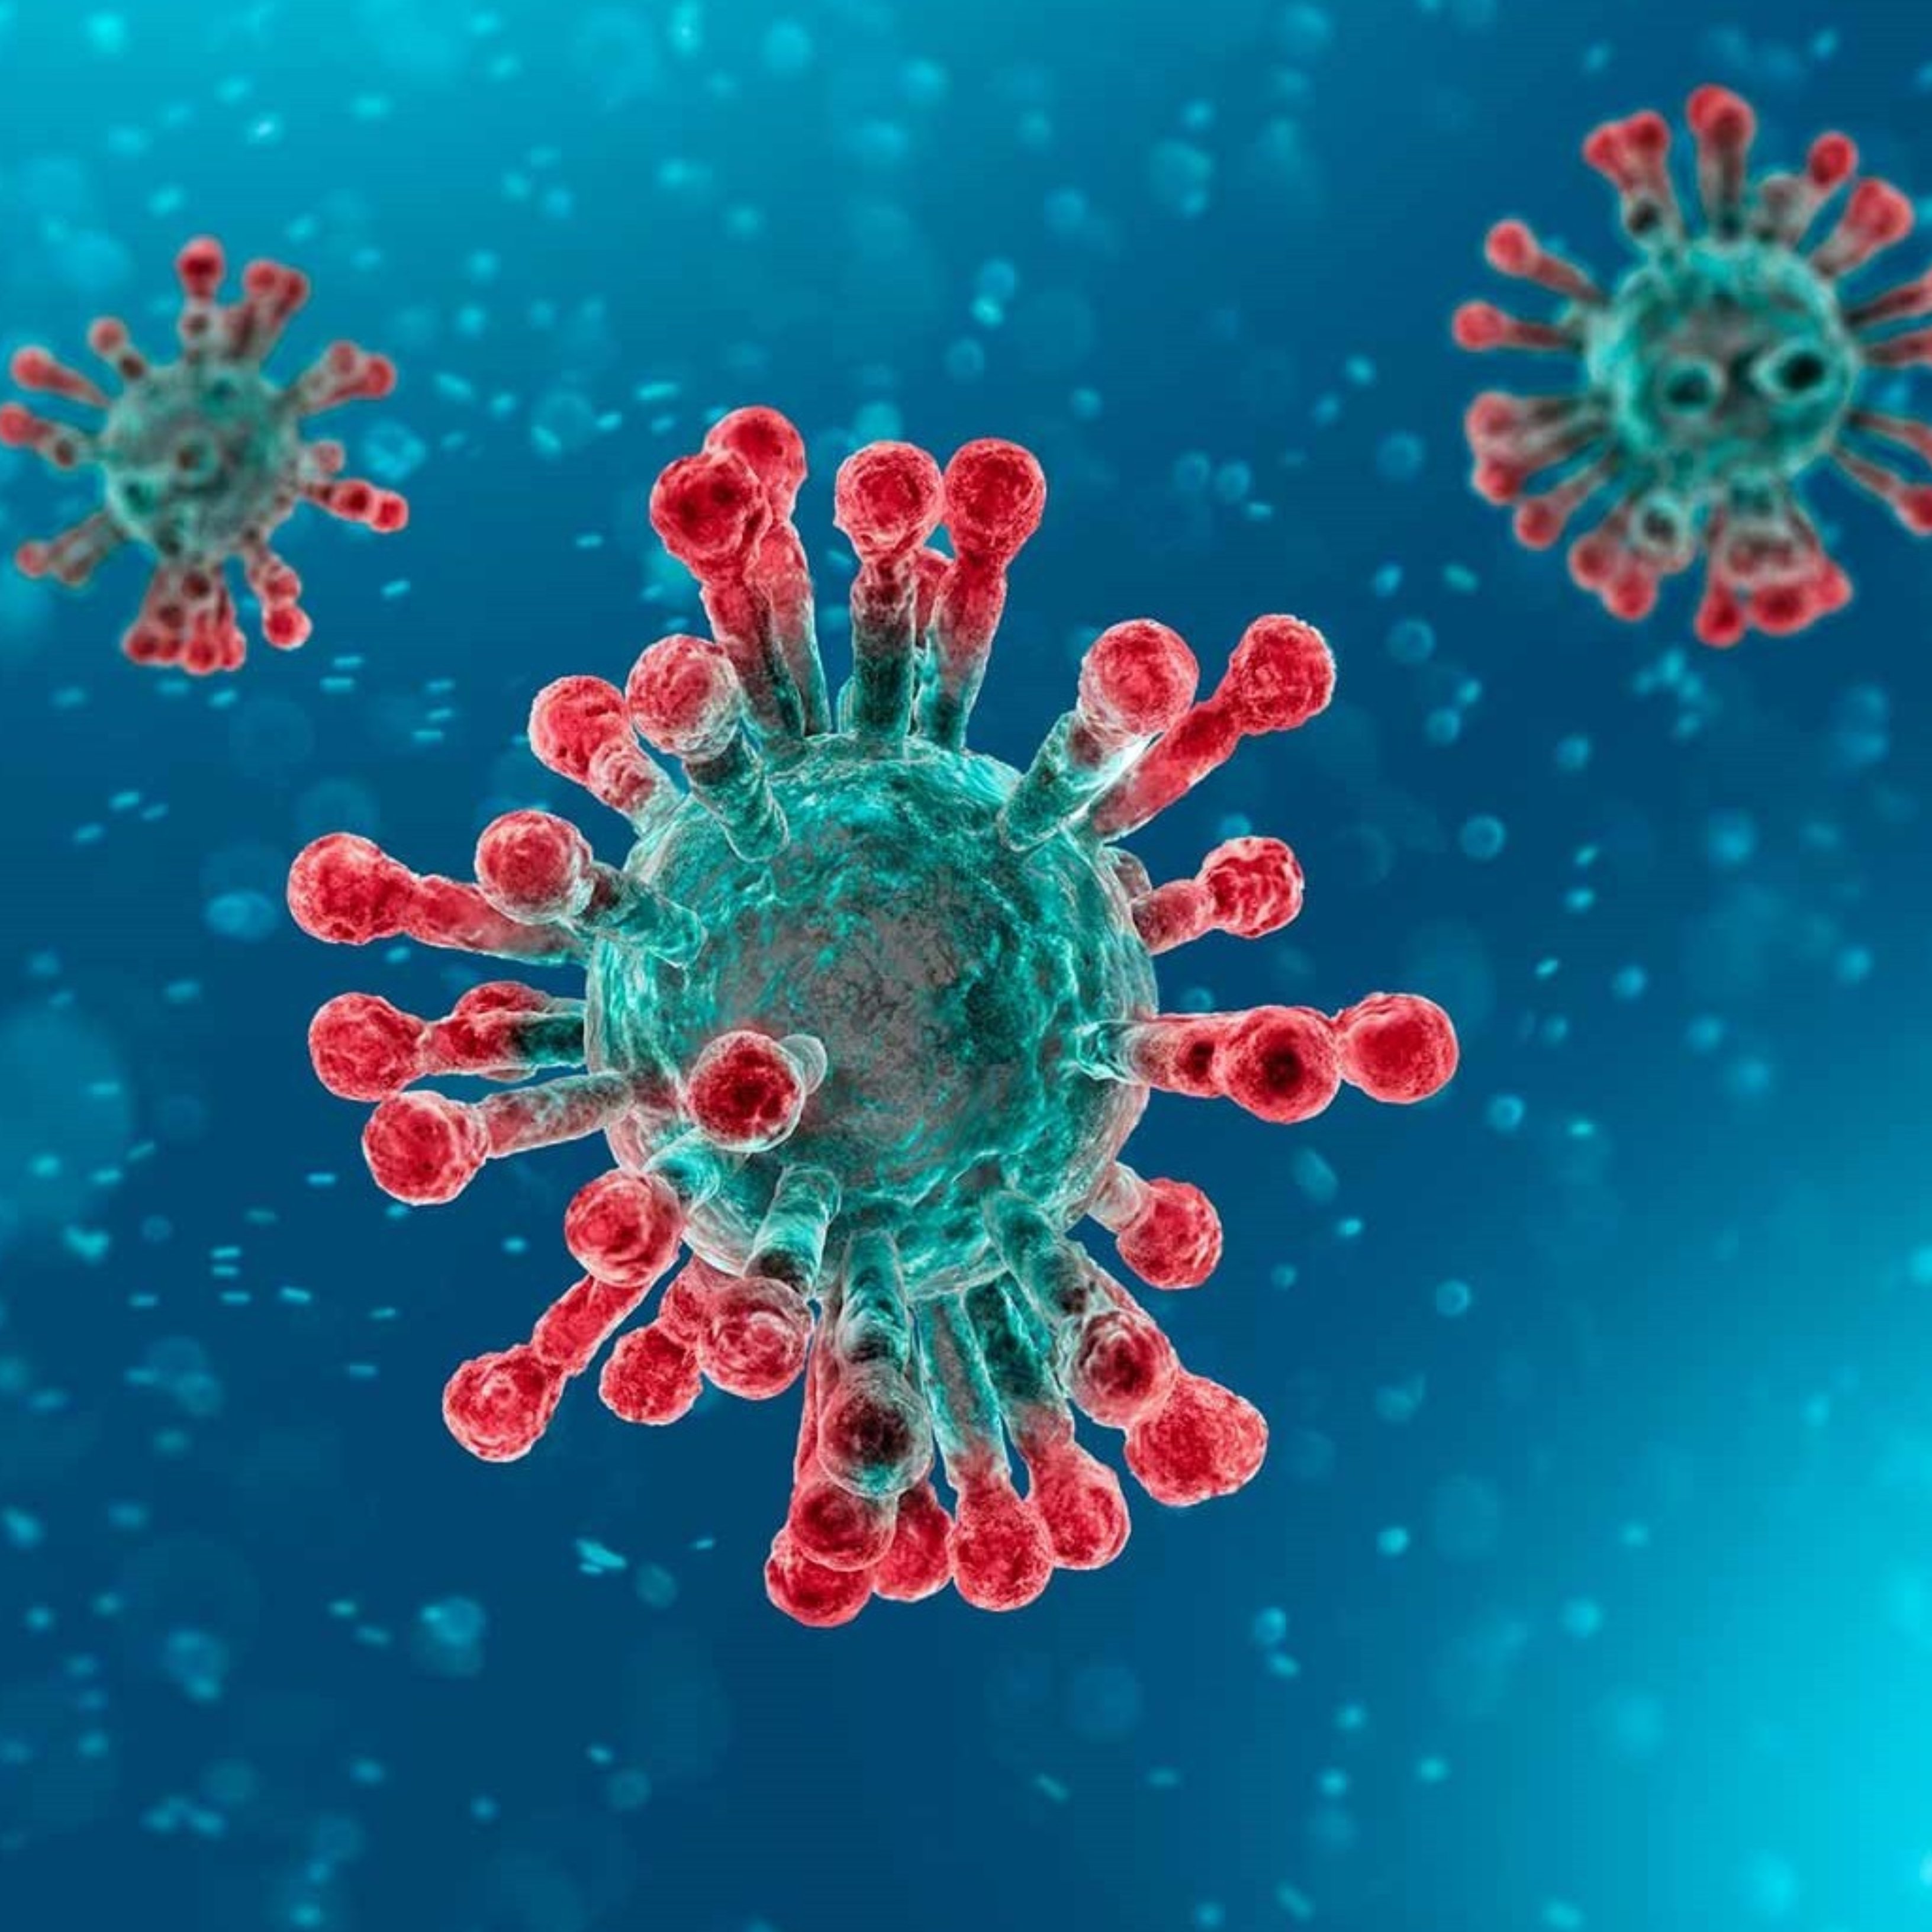 ¿Crees que el coronavirus llegará al Estado español?